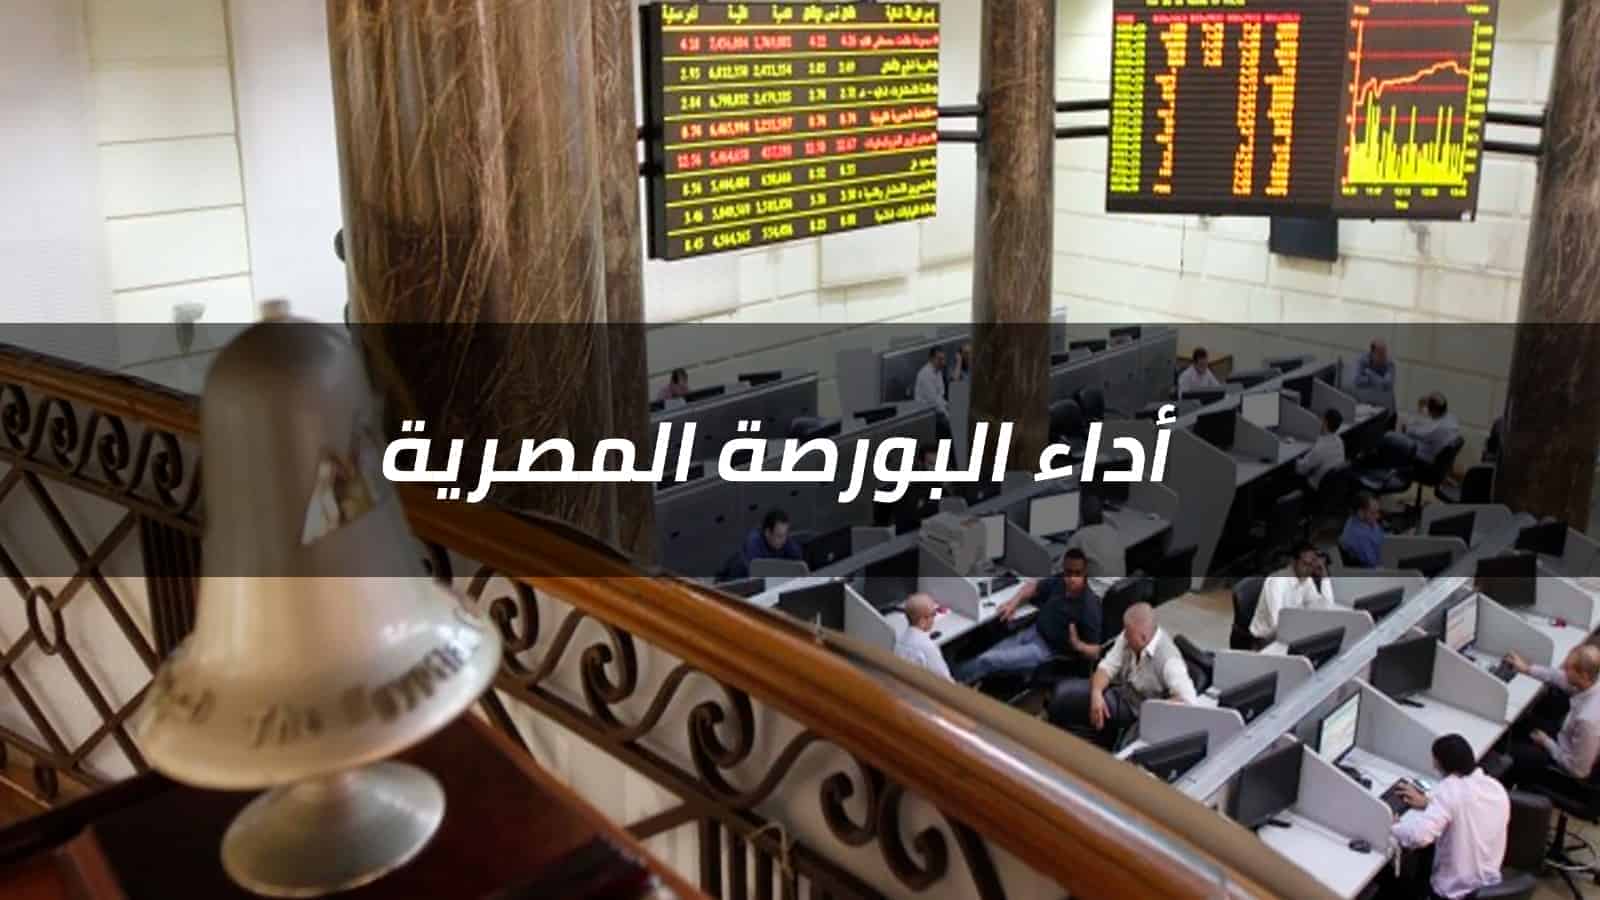 تلون مؤشرات السوق بالأحمر تحت ضغط مبيعات العرب